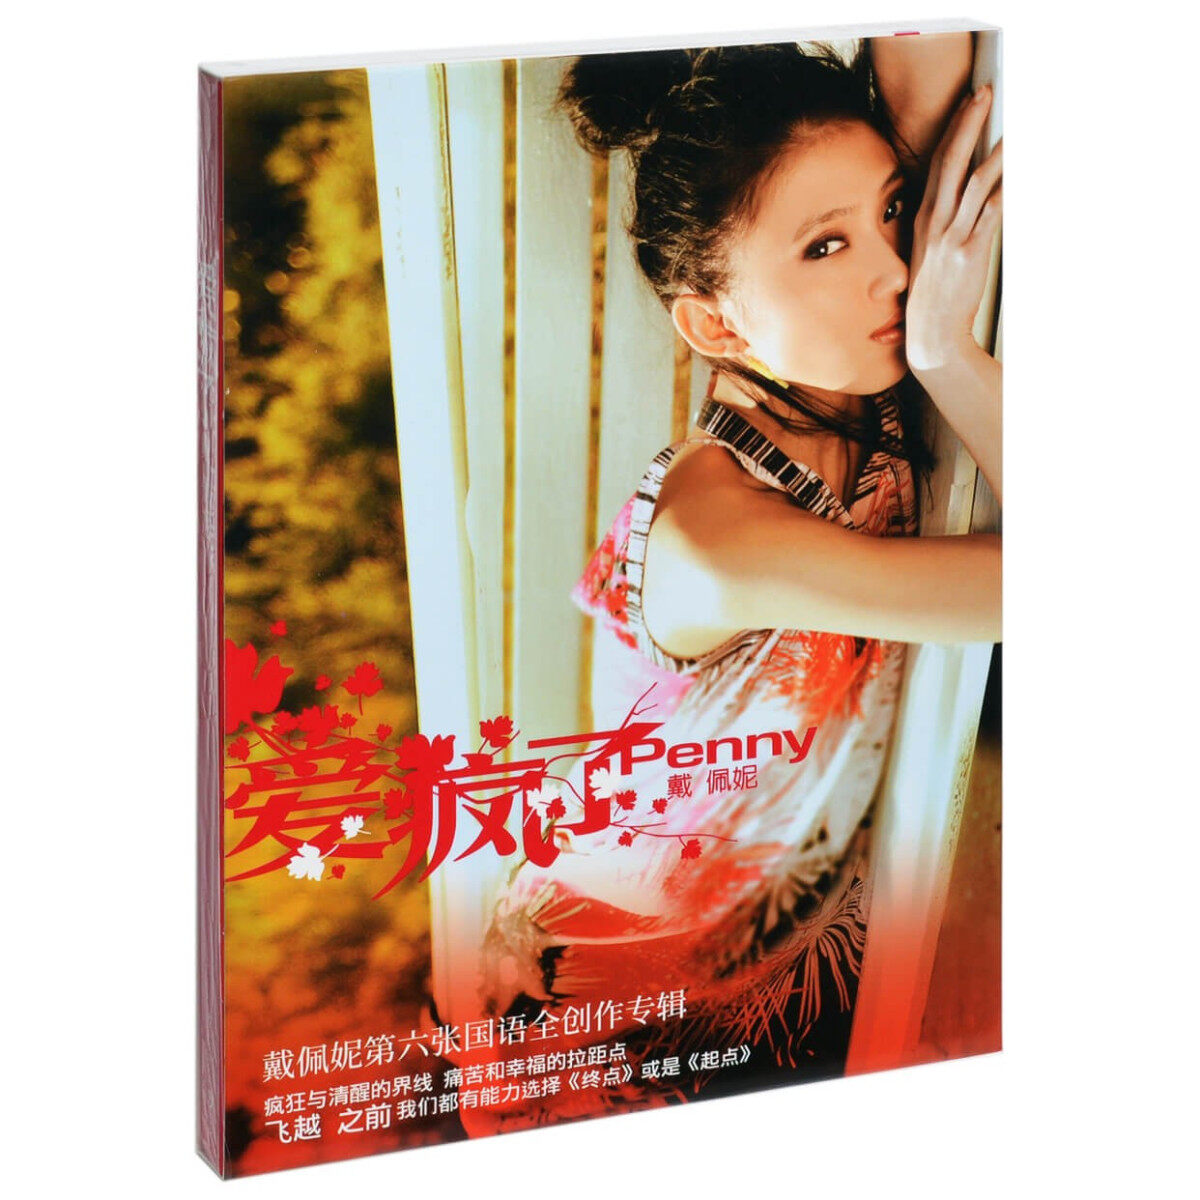 官方正版 戴佩妮 爱疯了 实体CD专辑 华语流行 车载光碟唱片